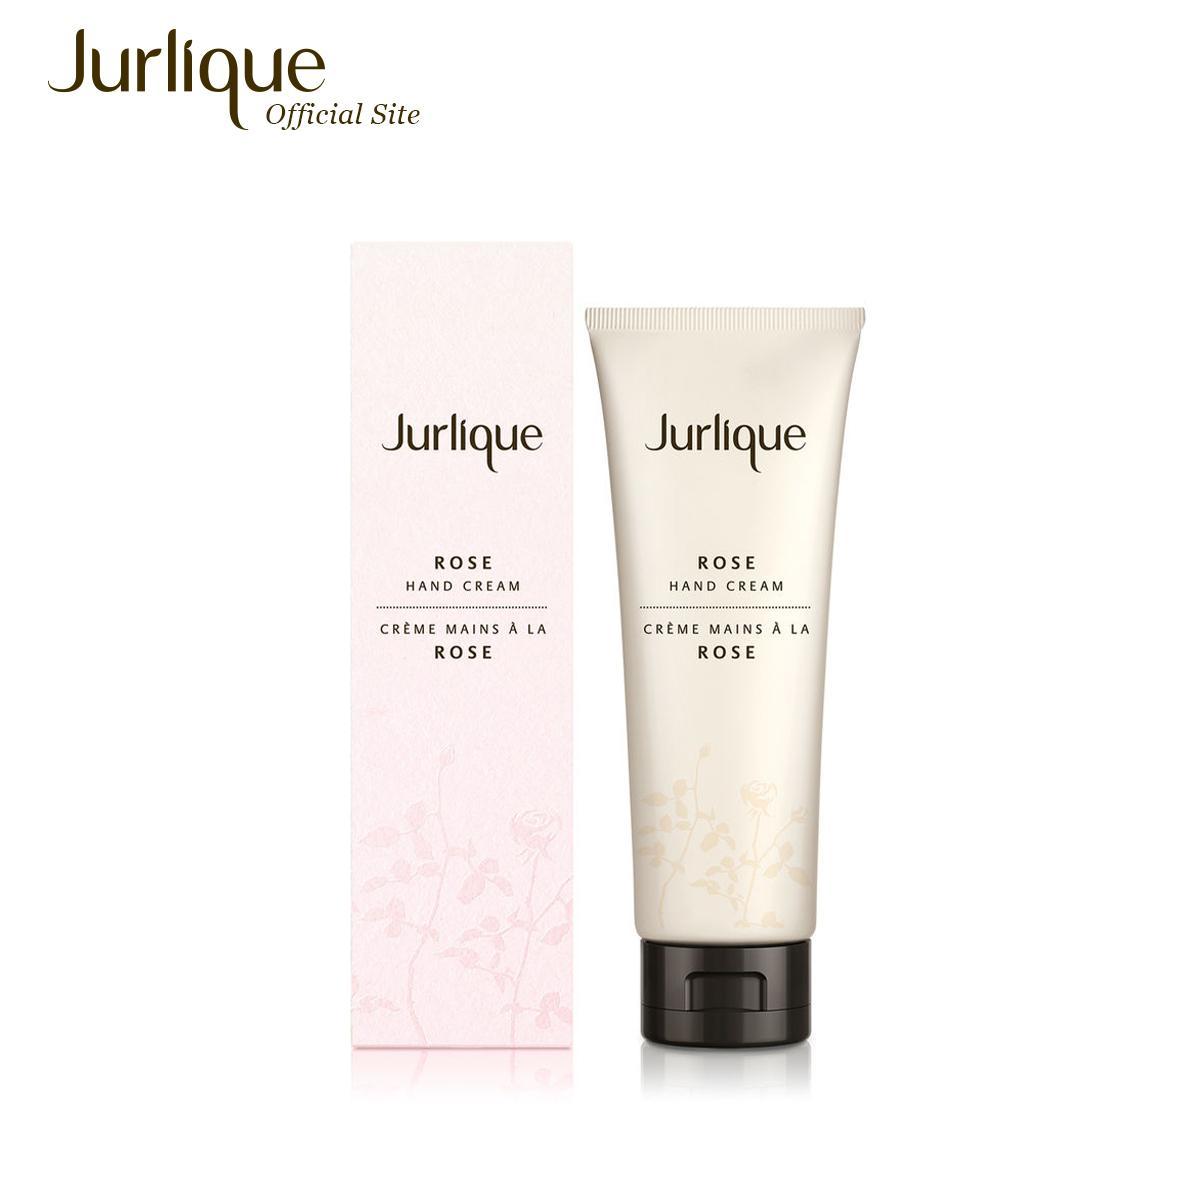 ราคา Jurlique Rose Hand Cream 125 ml ครีมทามือกลิ่นกุหลาบ